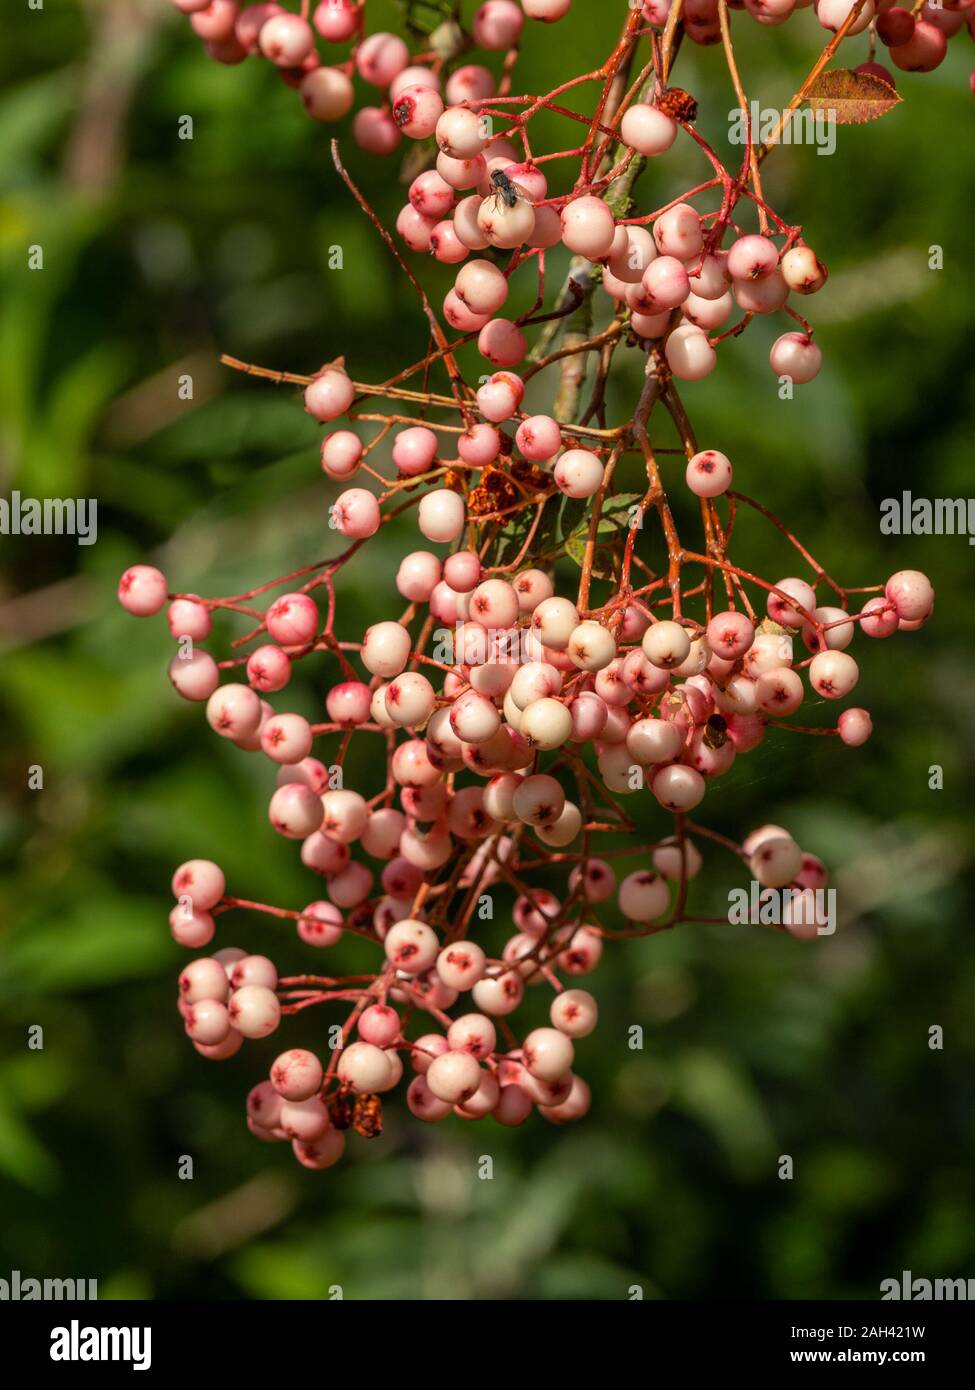 Sorbus Vilmorinii / Vilmorin's rowan /  Vilmorin's mountain ash tree berries in September, UK Stock Photo